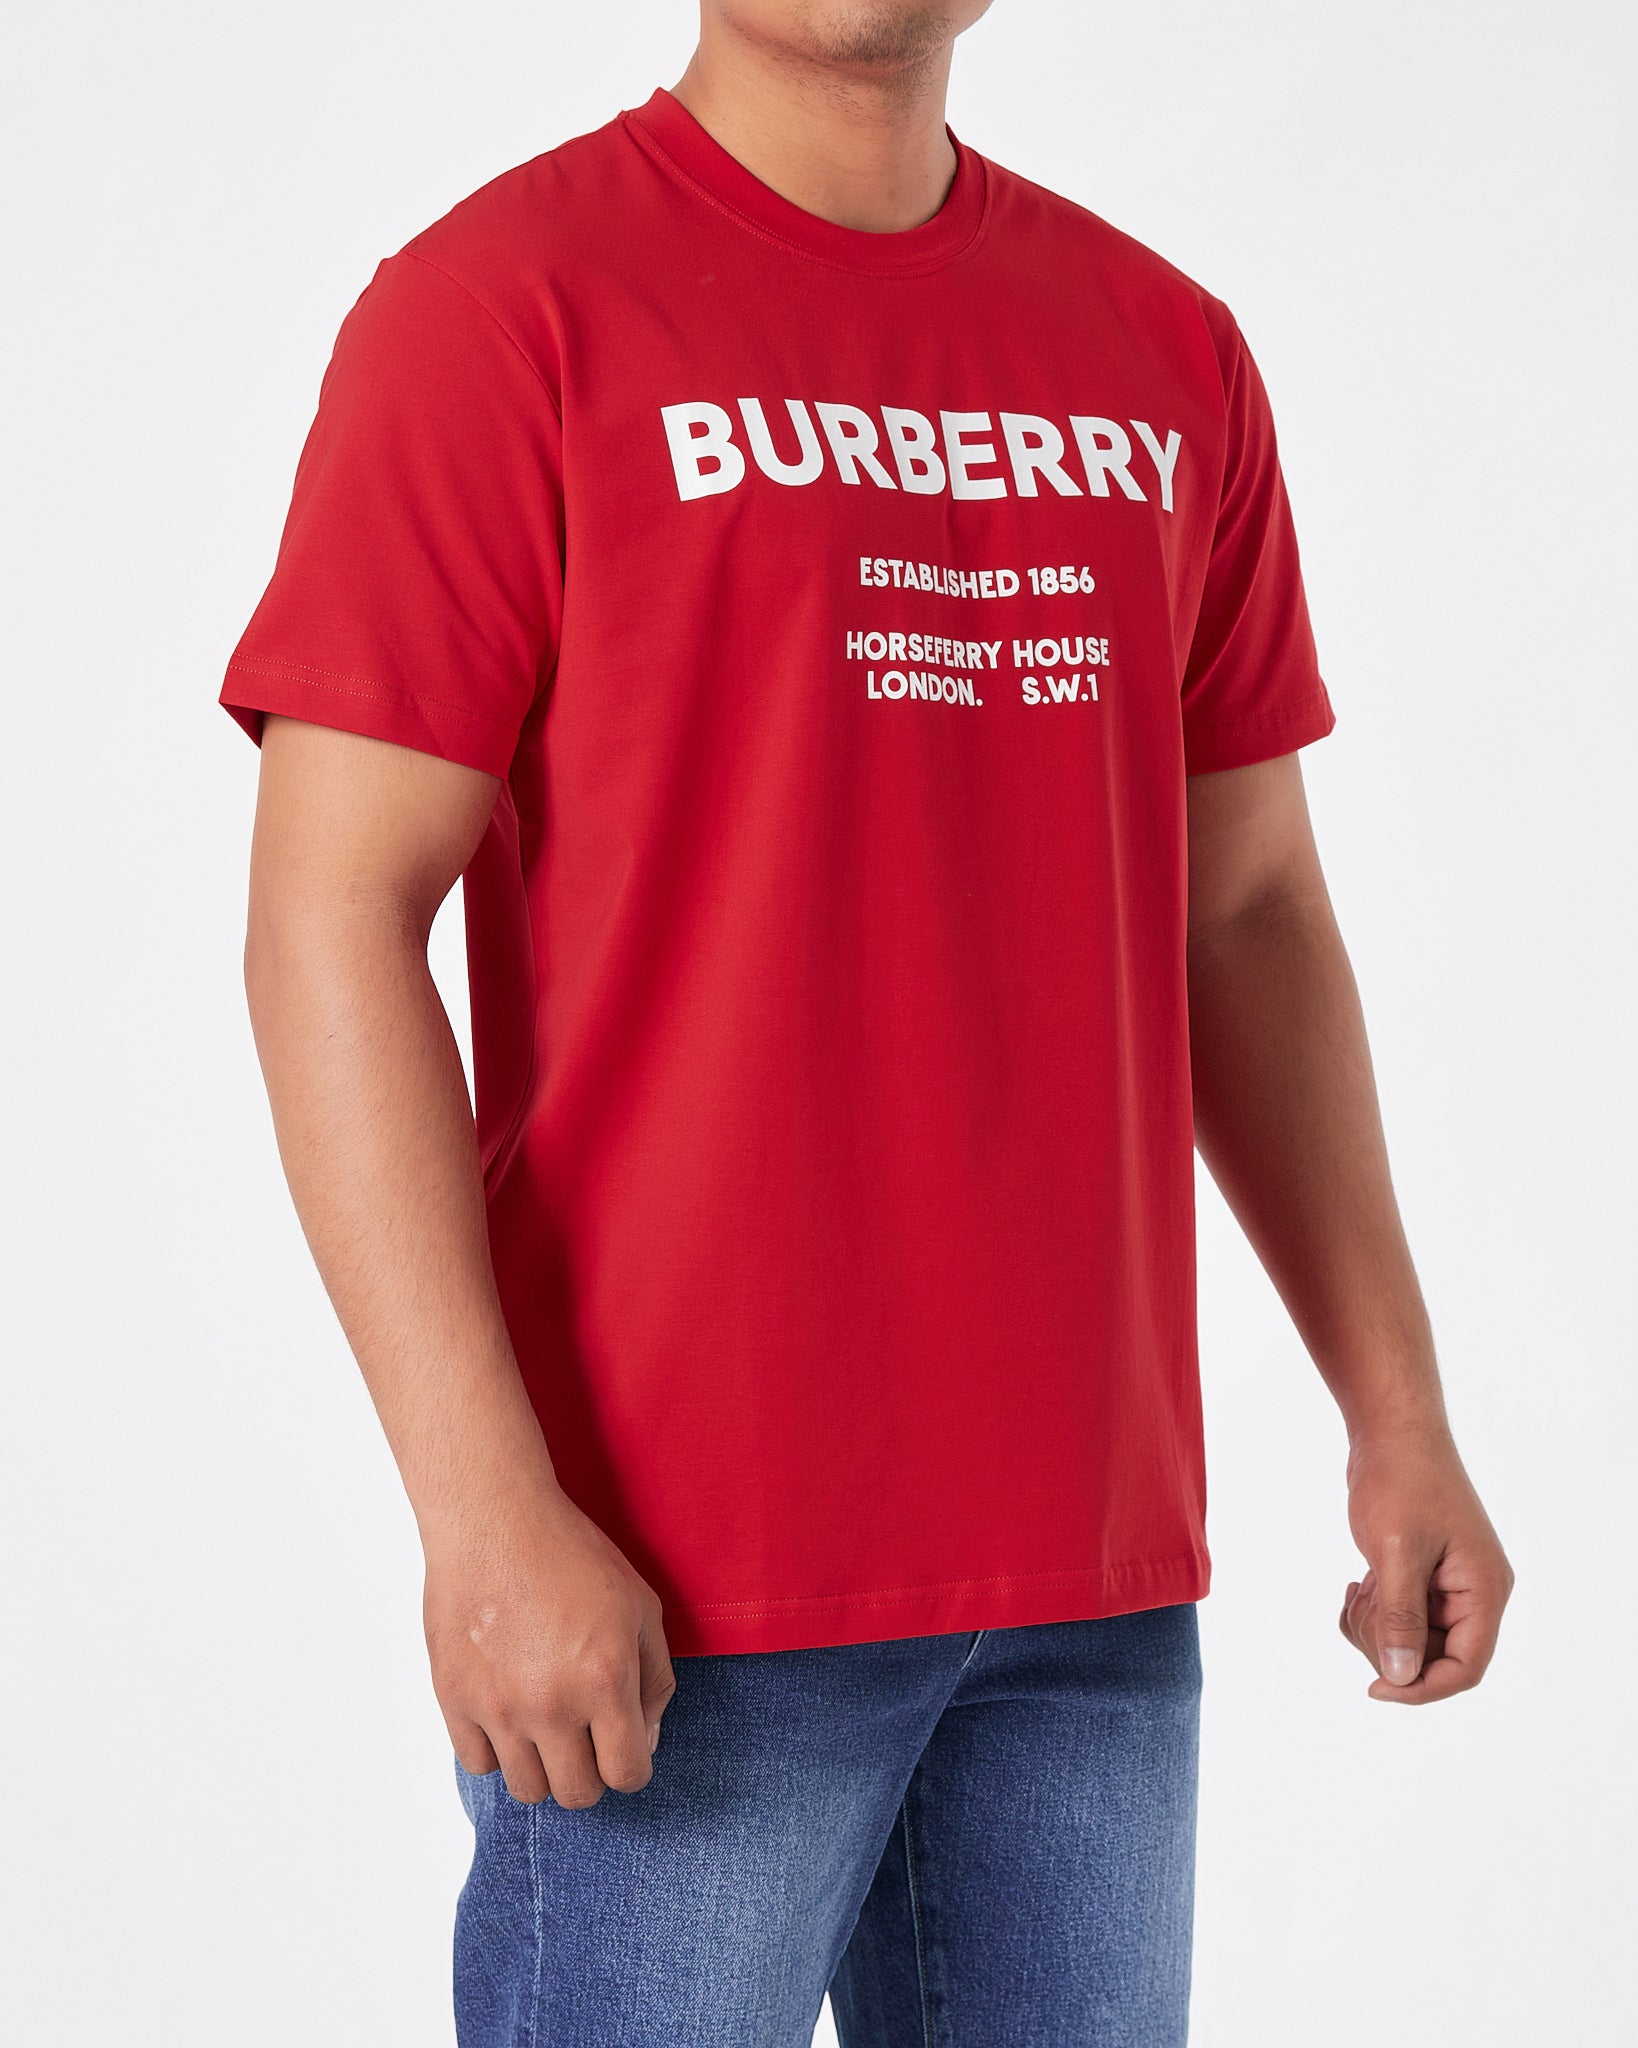 BUR Logo Printed Men Red T-Shirt 16.90